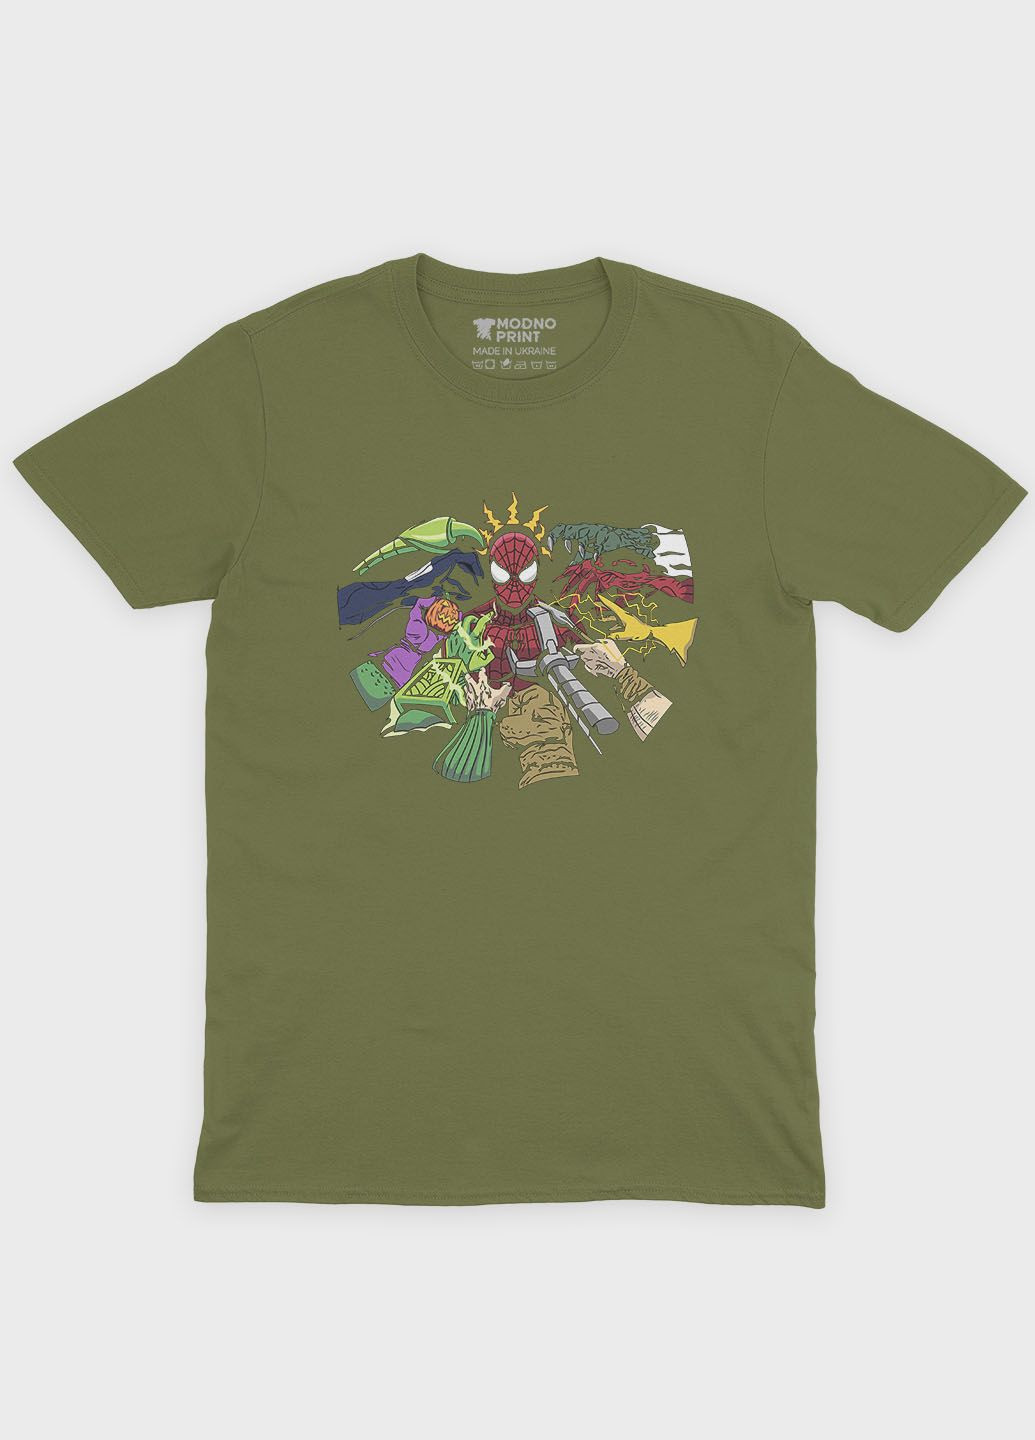 Хаки (оливковая) мужская футболка с принтом супергероя - человек-паук (ts001-1-hgr-006-014-014) Modno